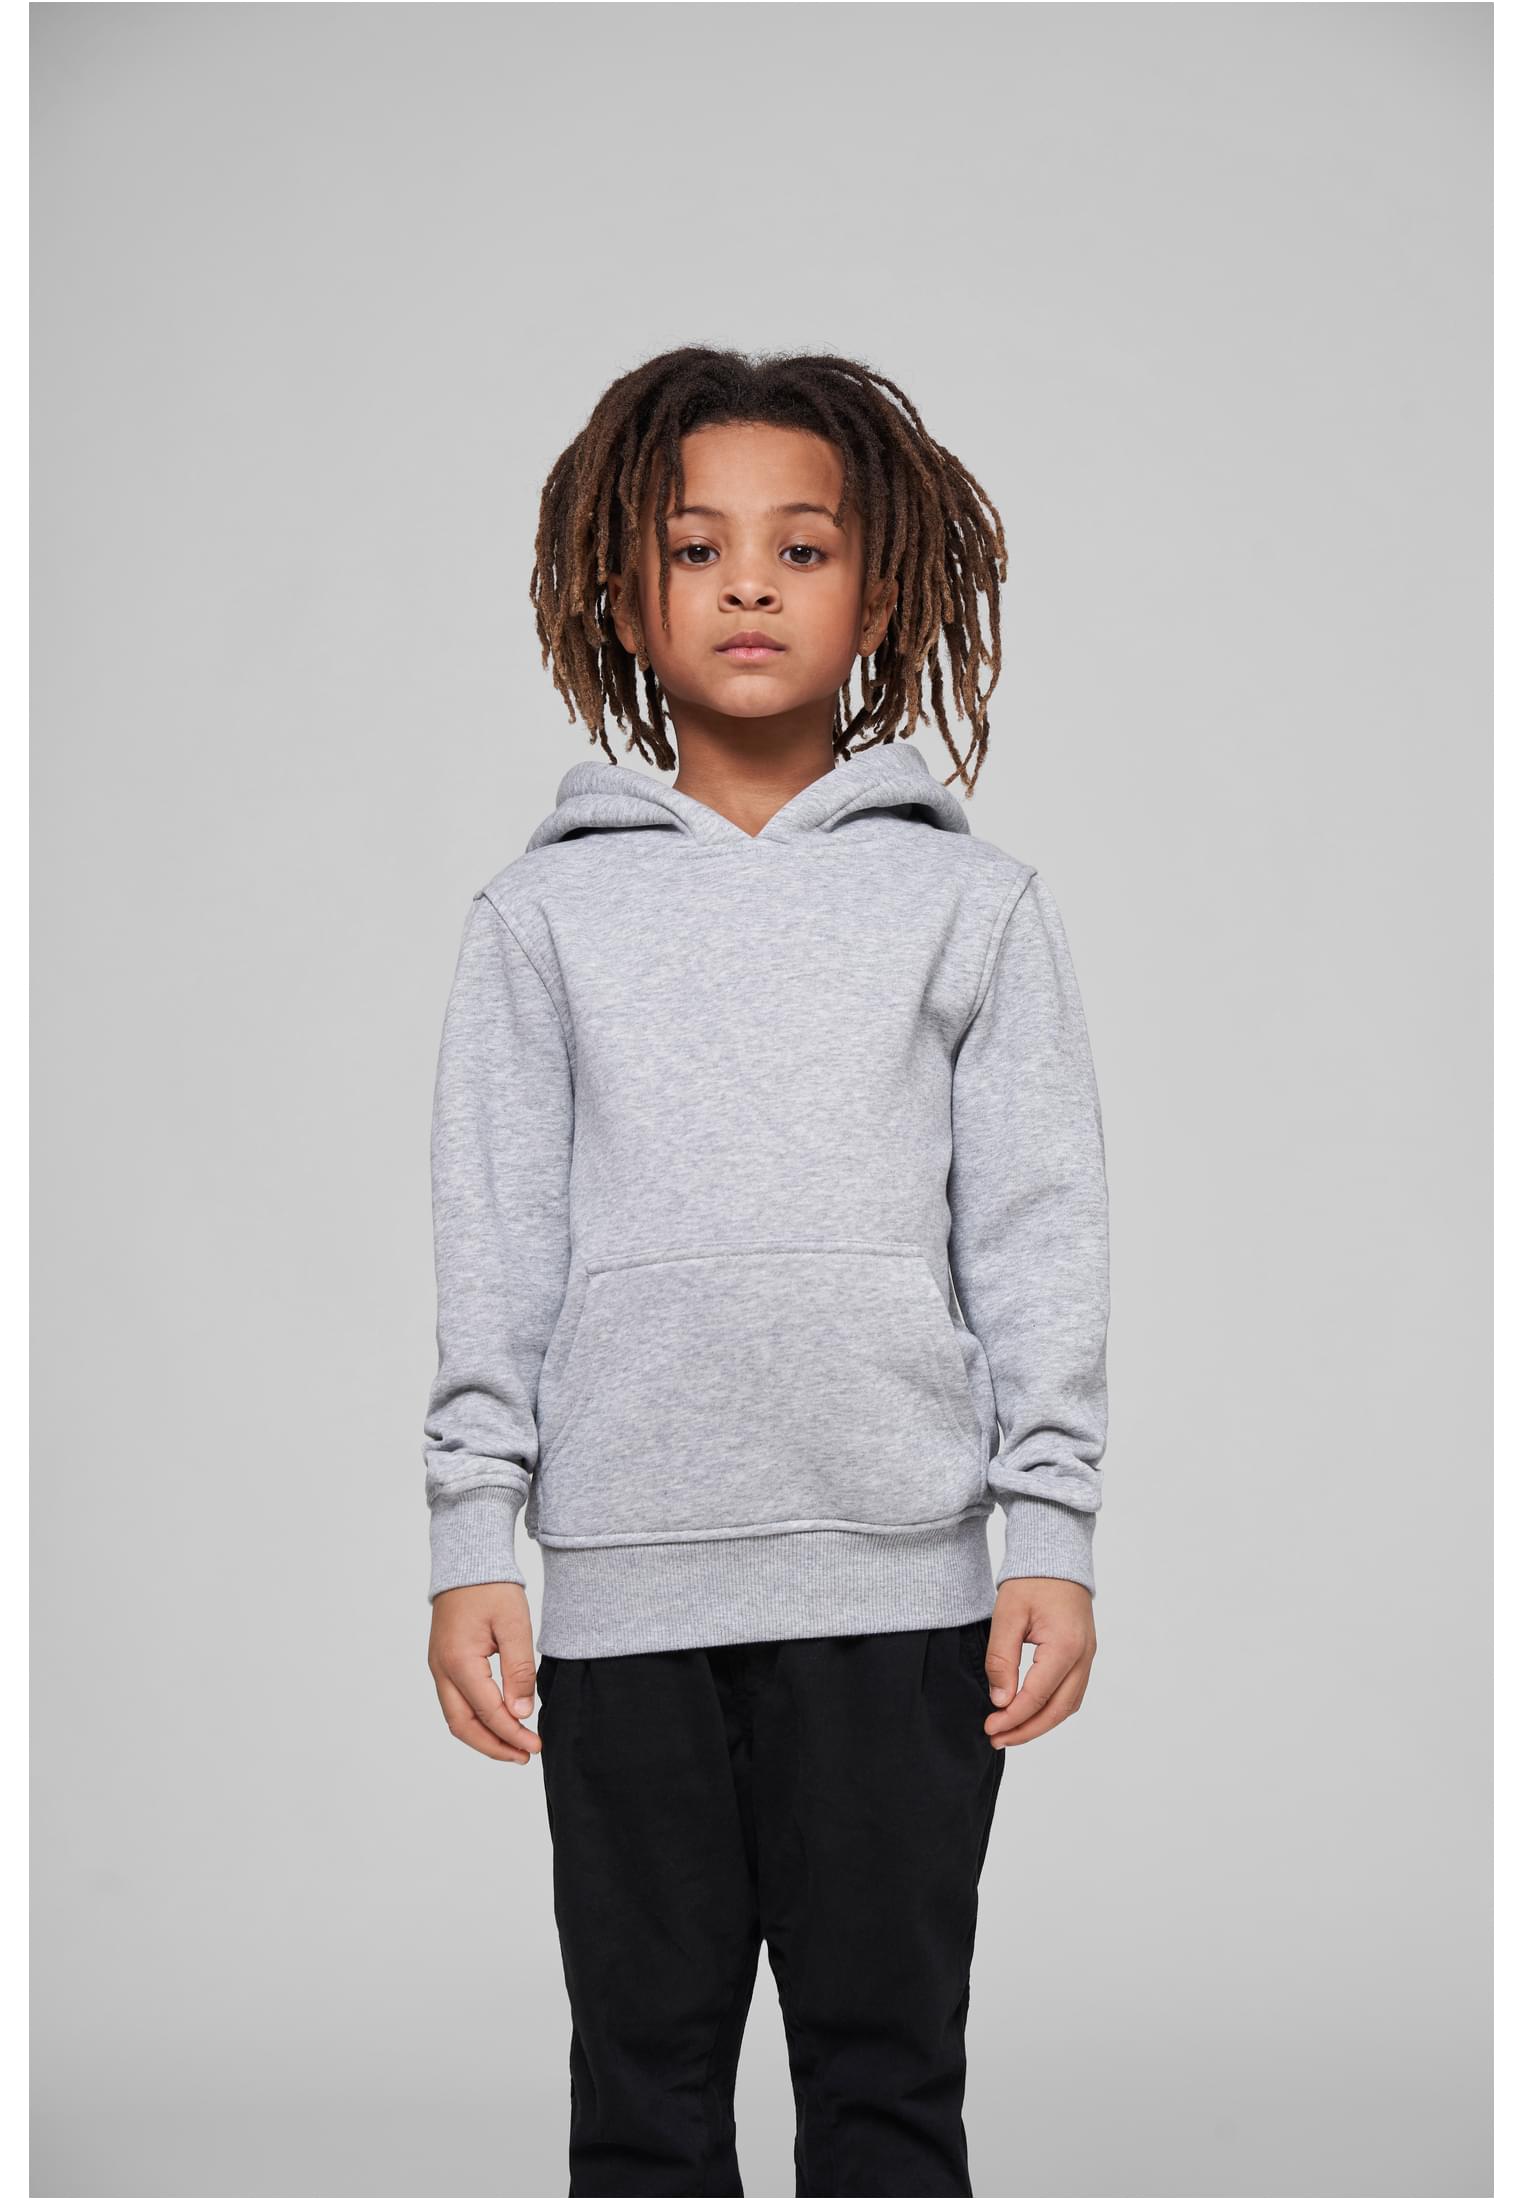 Größen 110/116-158/164 Build Your Brand Jungen Kapuzenpullover Basic Kids Hoody Kinder Hooded Sweater erhältlich in vielen Farben 